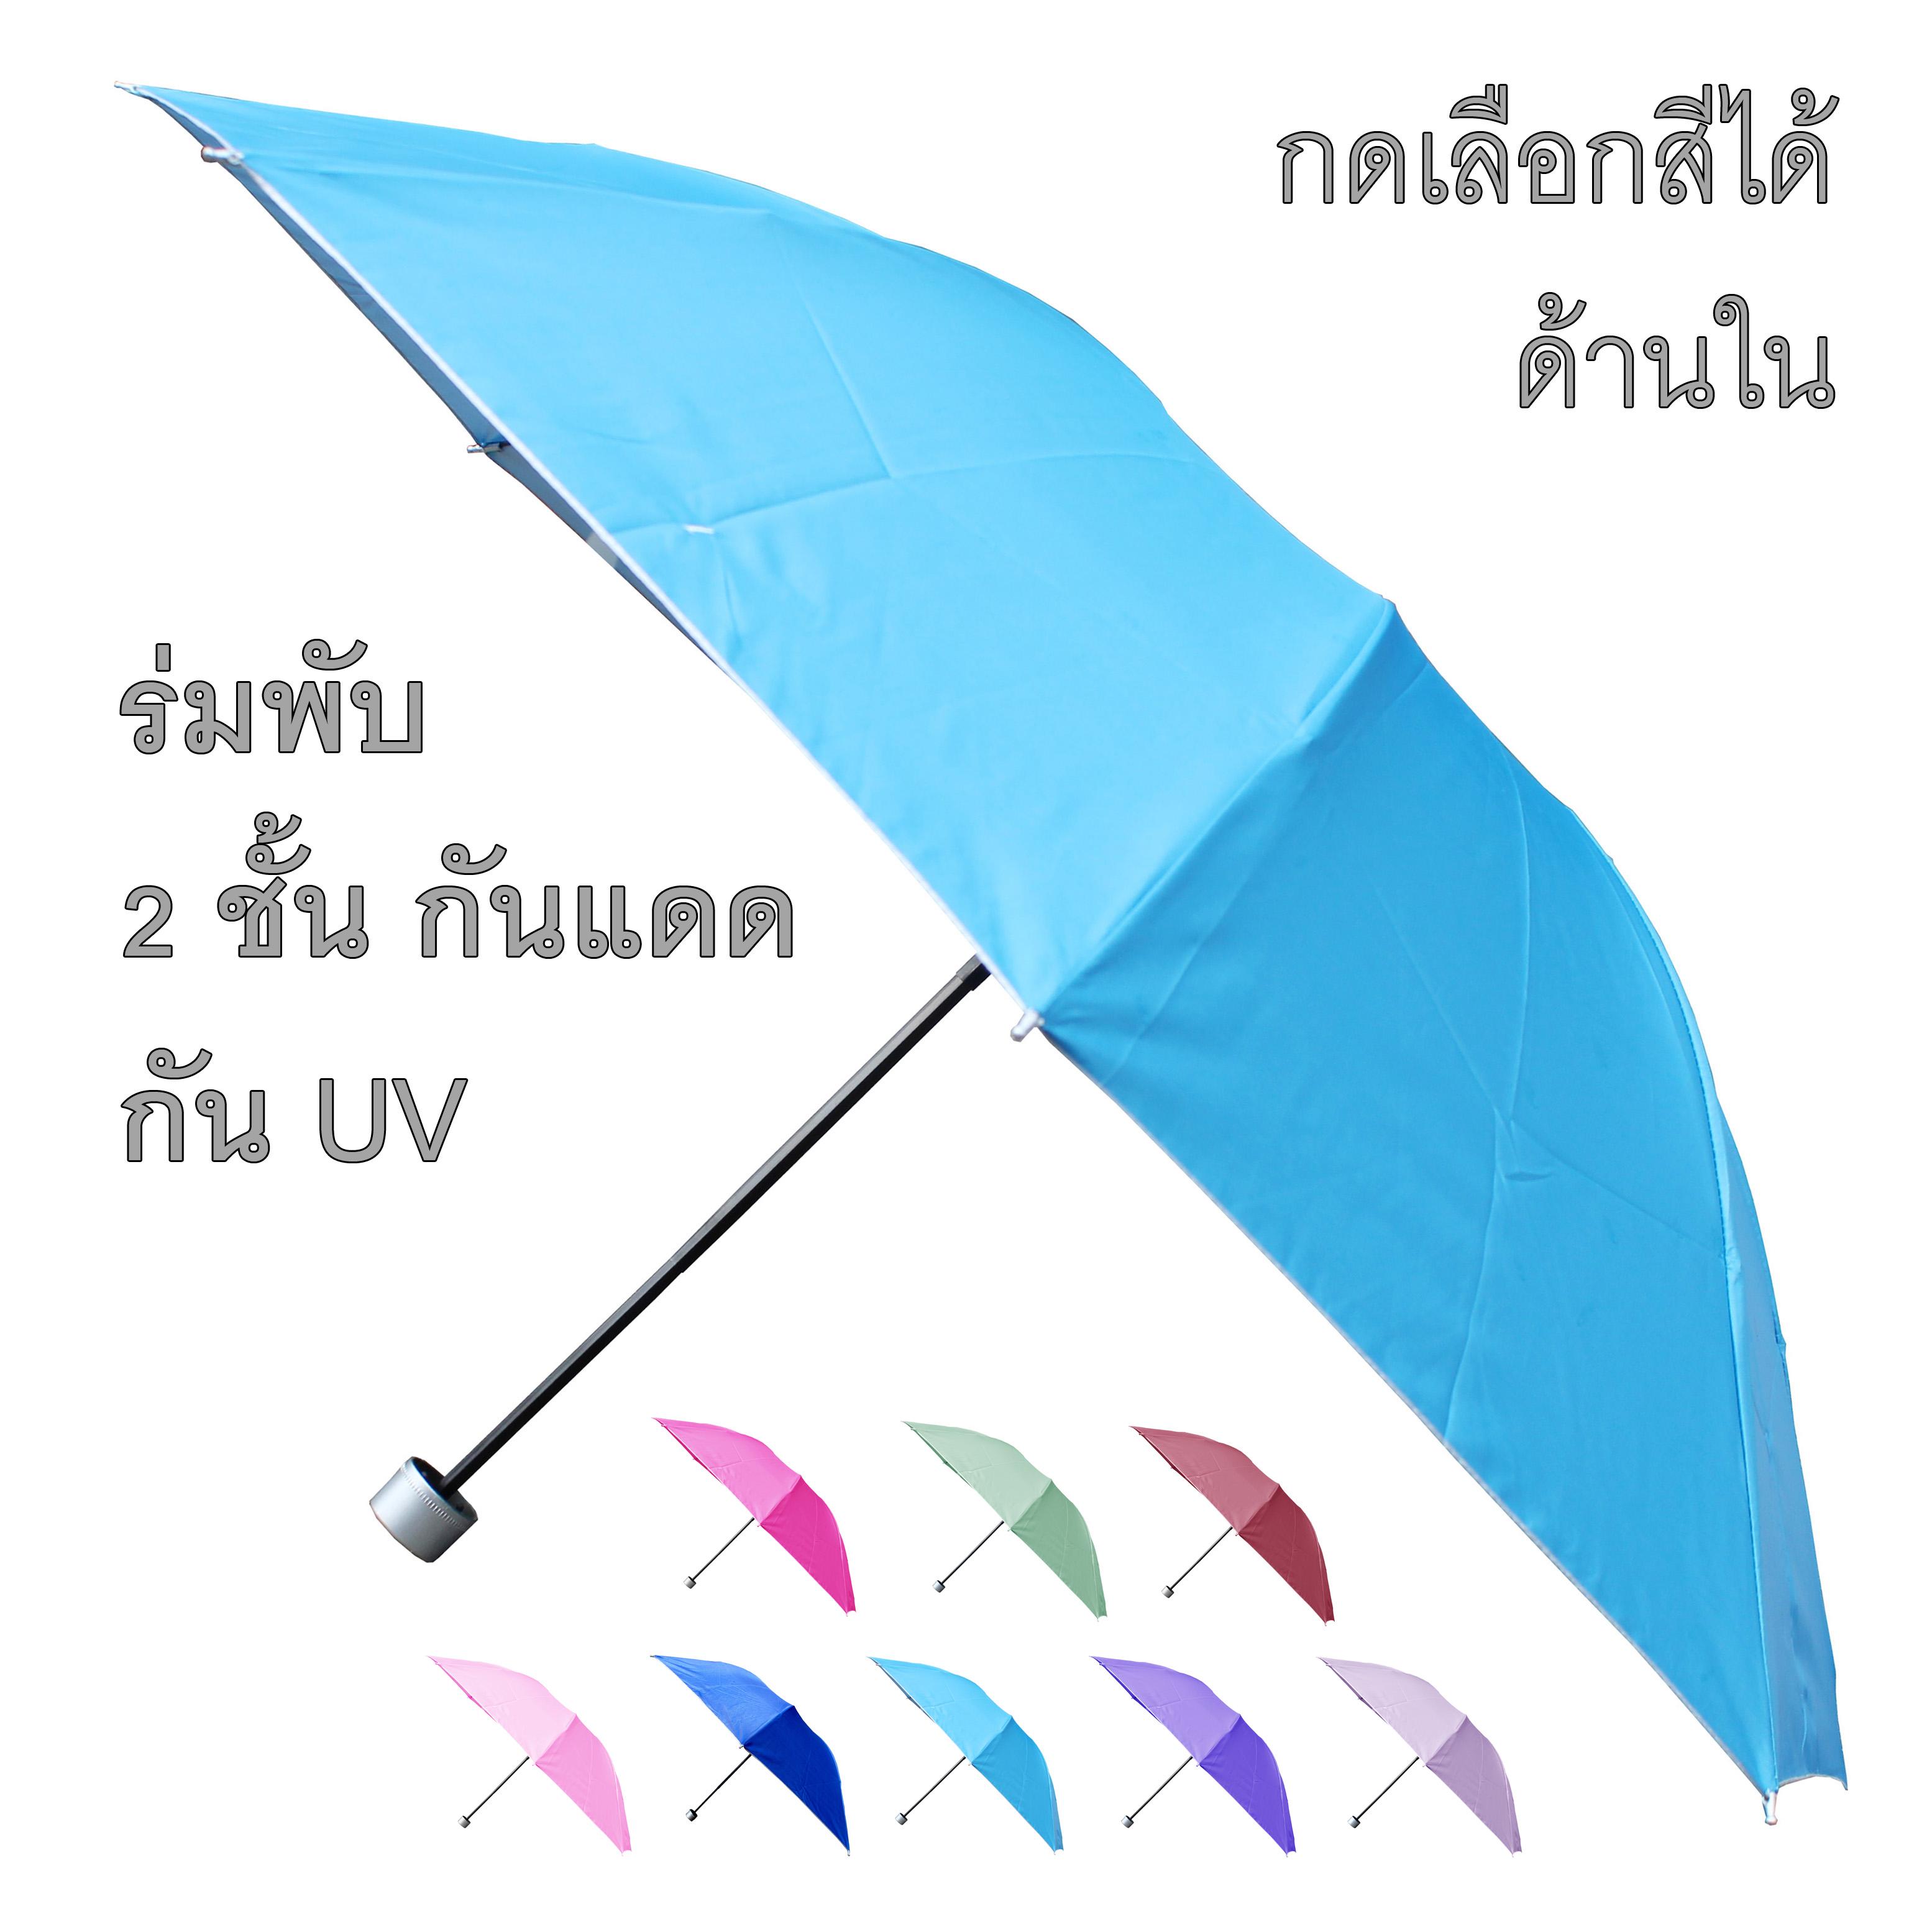 ร่มกันแดด ร่มกันฝน ร่มกันยูวี UV คุณภาพดีเลือกสีได้น้า